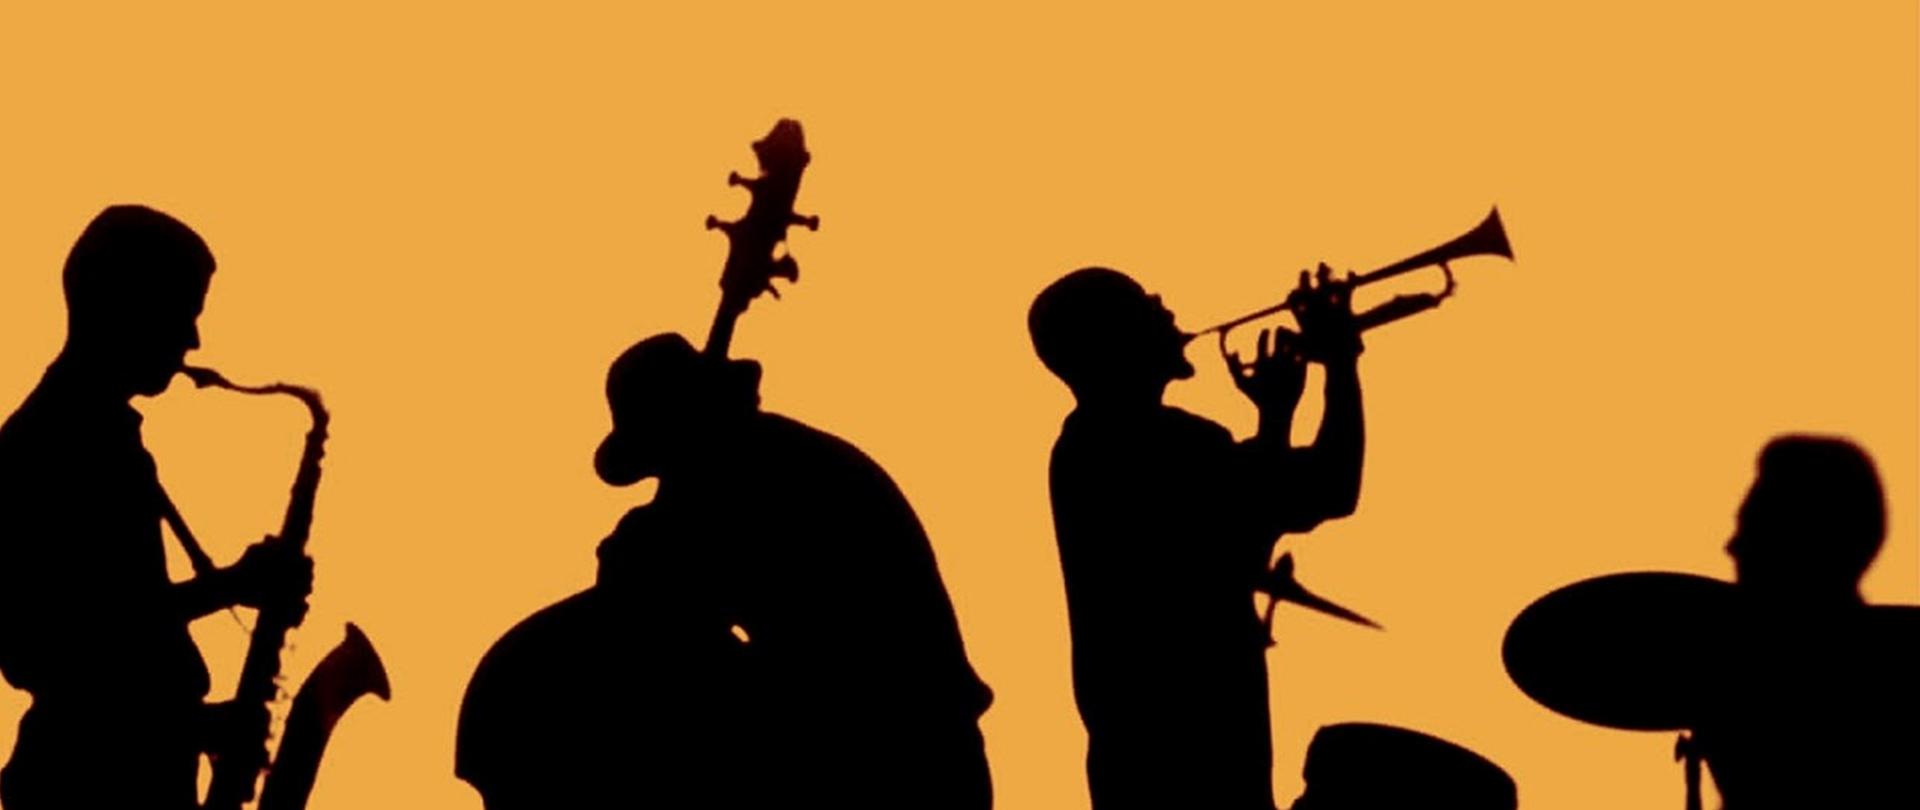 Sylwetki muzyków czarne na pomarańczowym tle, napis Vii Makroregionalne Prezentacje I Warsztaty Improwizacji Jazzowej